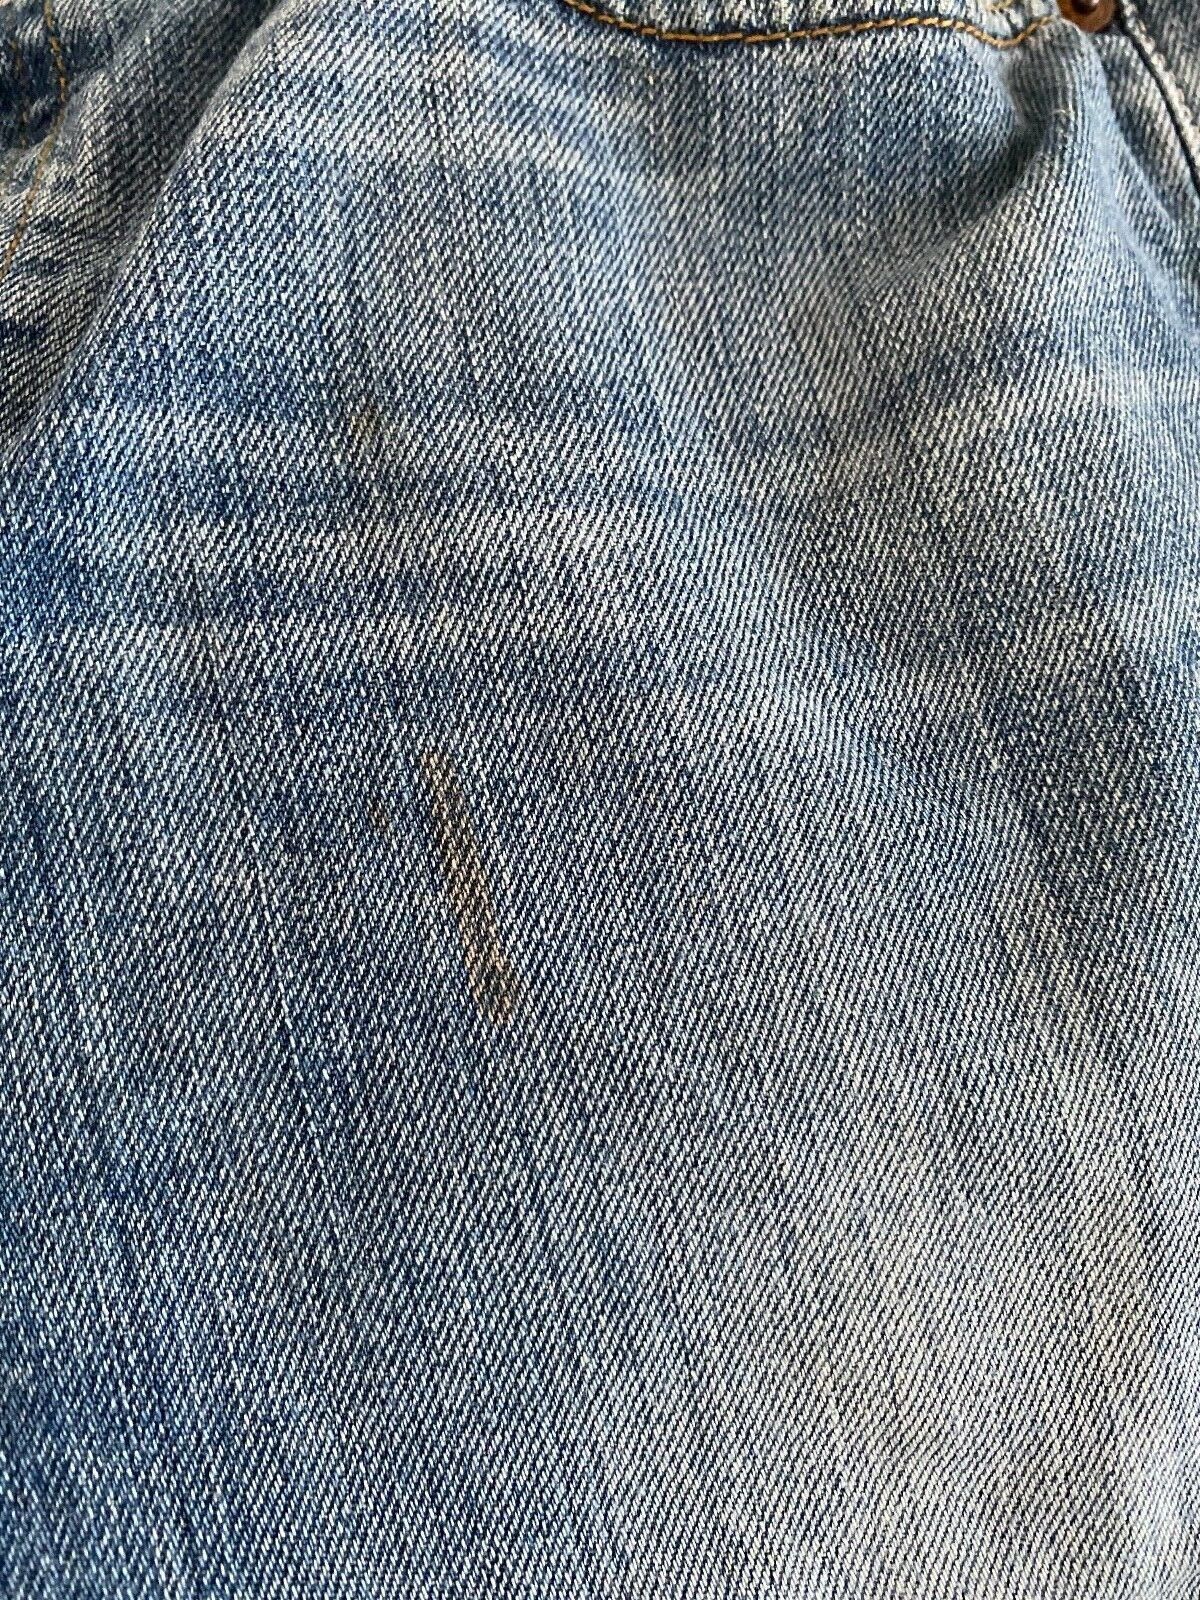 Levi's 501 W27 (true to size) cutoff jeans/denim,… - image 3